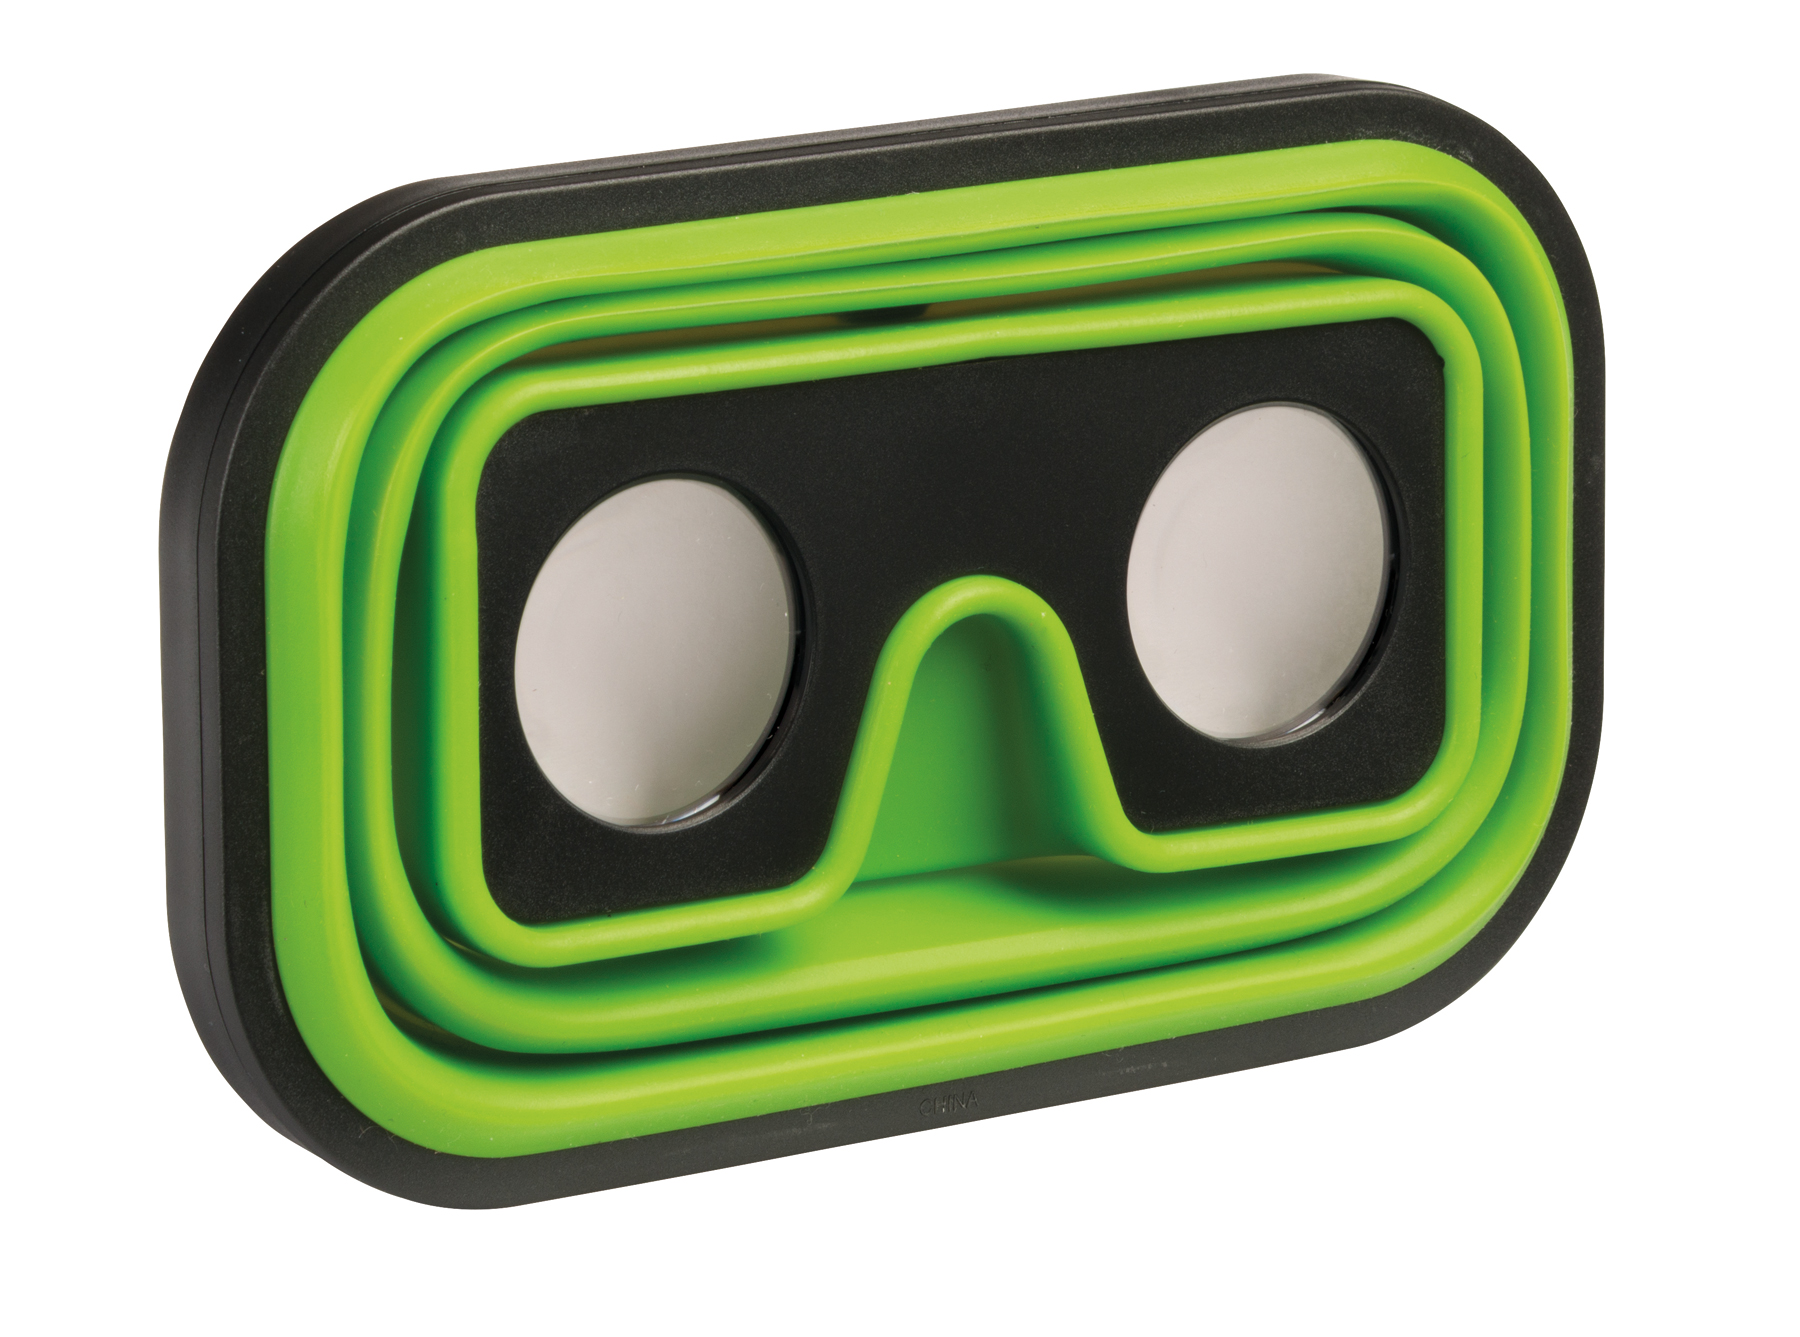 Okulary wirtualnej rzeczywistości IMAGINATION FLEX, czarny, zielony